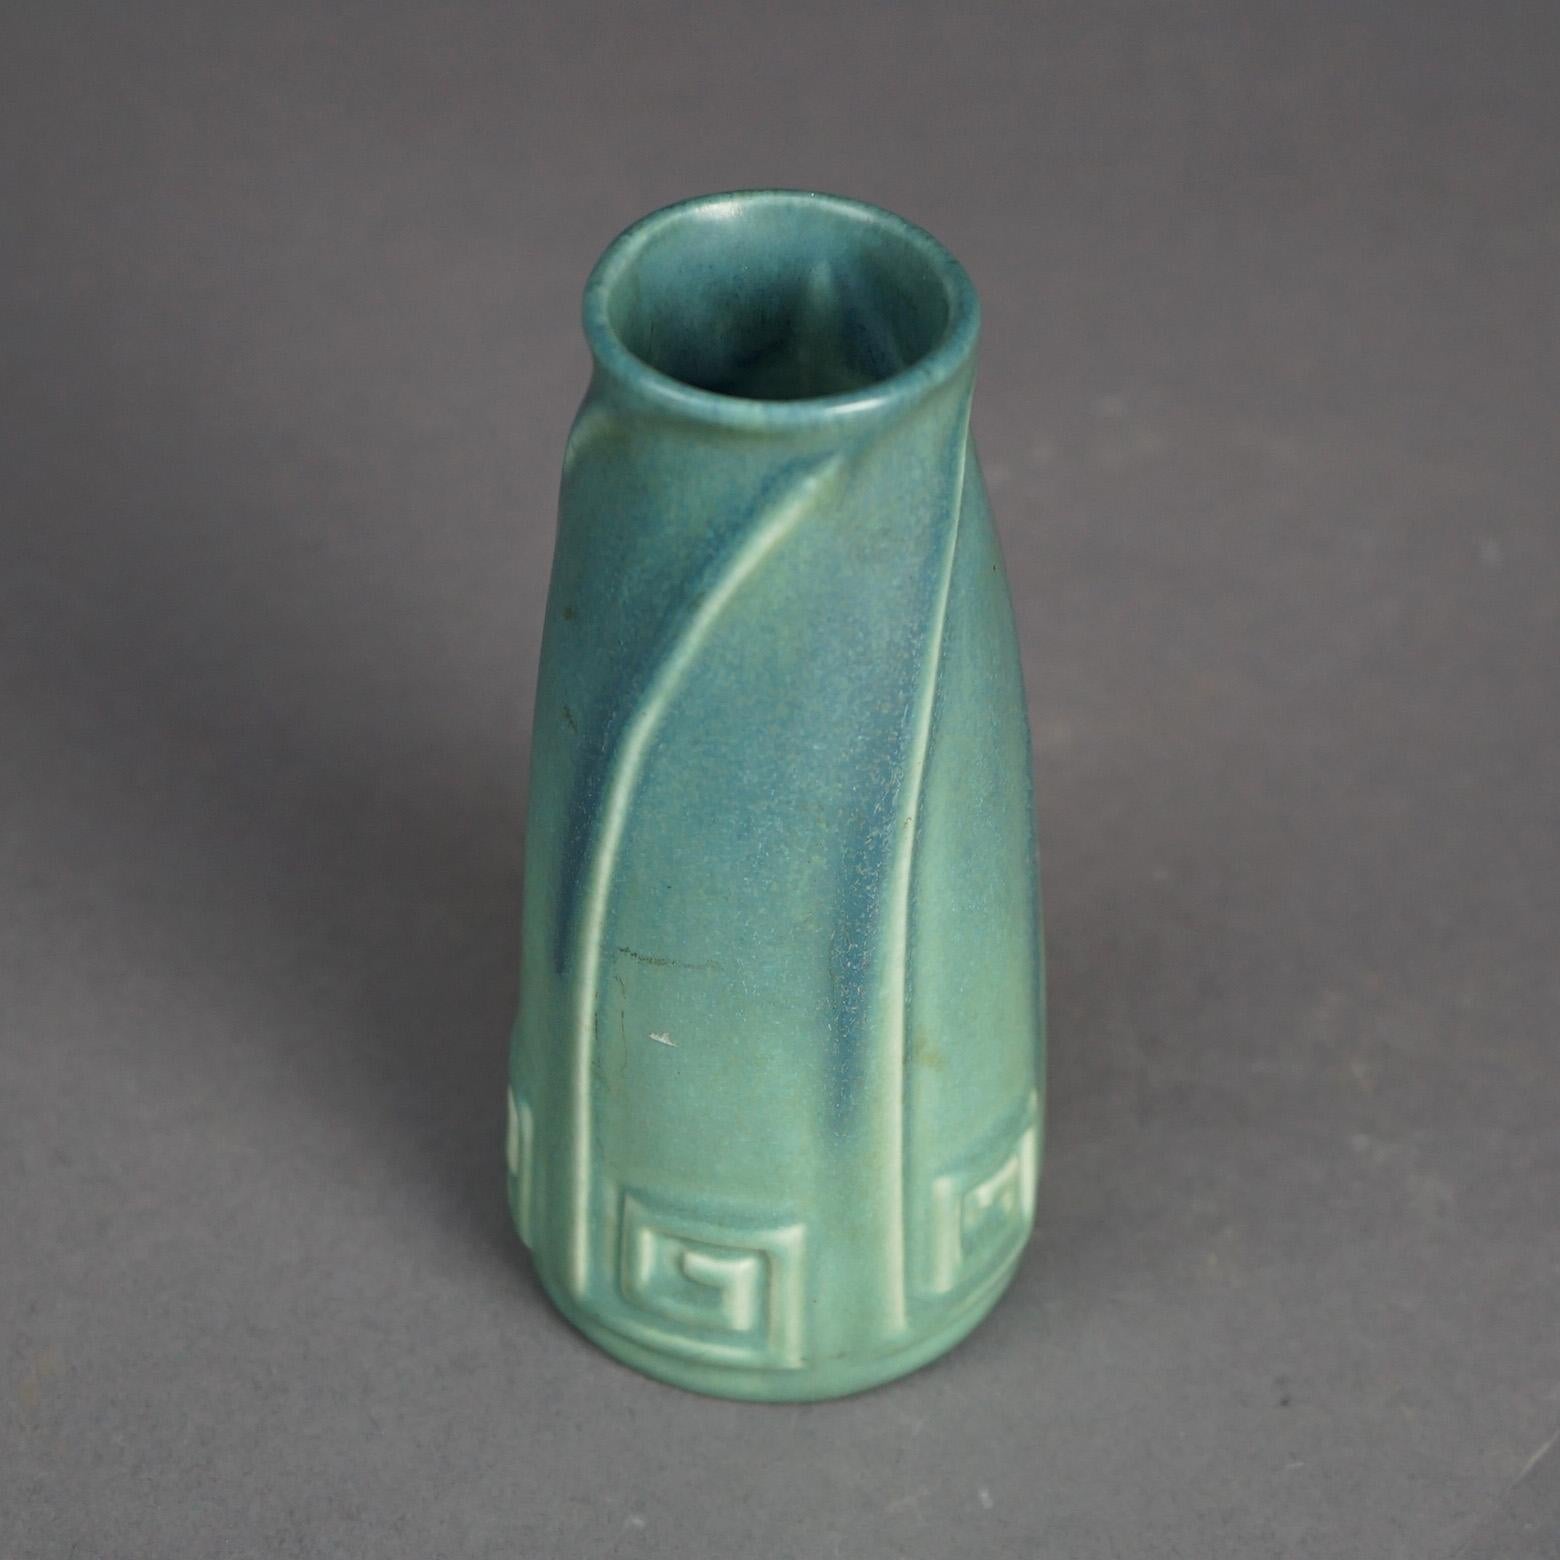 Un vase antique Arts and Crafts de Rookwood présente une construction en poterie d'art à glaçure mate avec une clé grecque stylisée et des éléments tourbillonnants, signé sur la base comme photographié, vers 1923.

Dimensions : 6''H x 2.75''W x